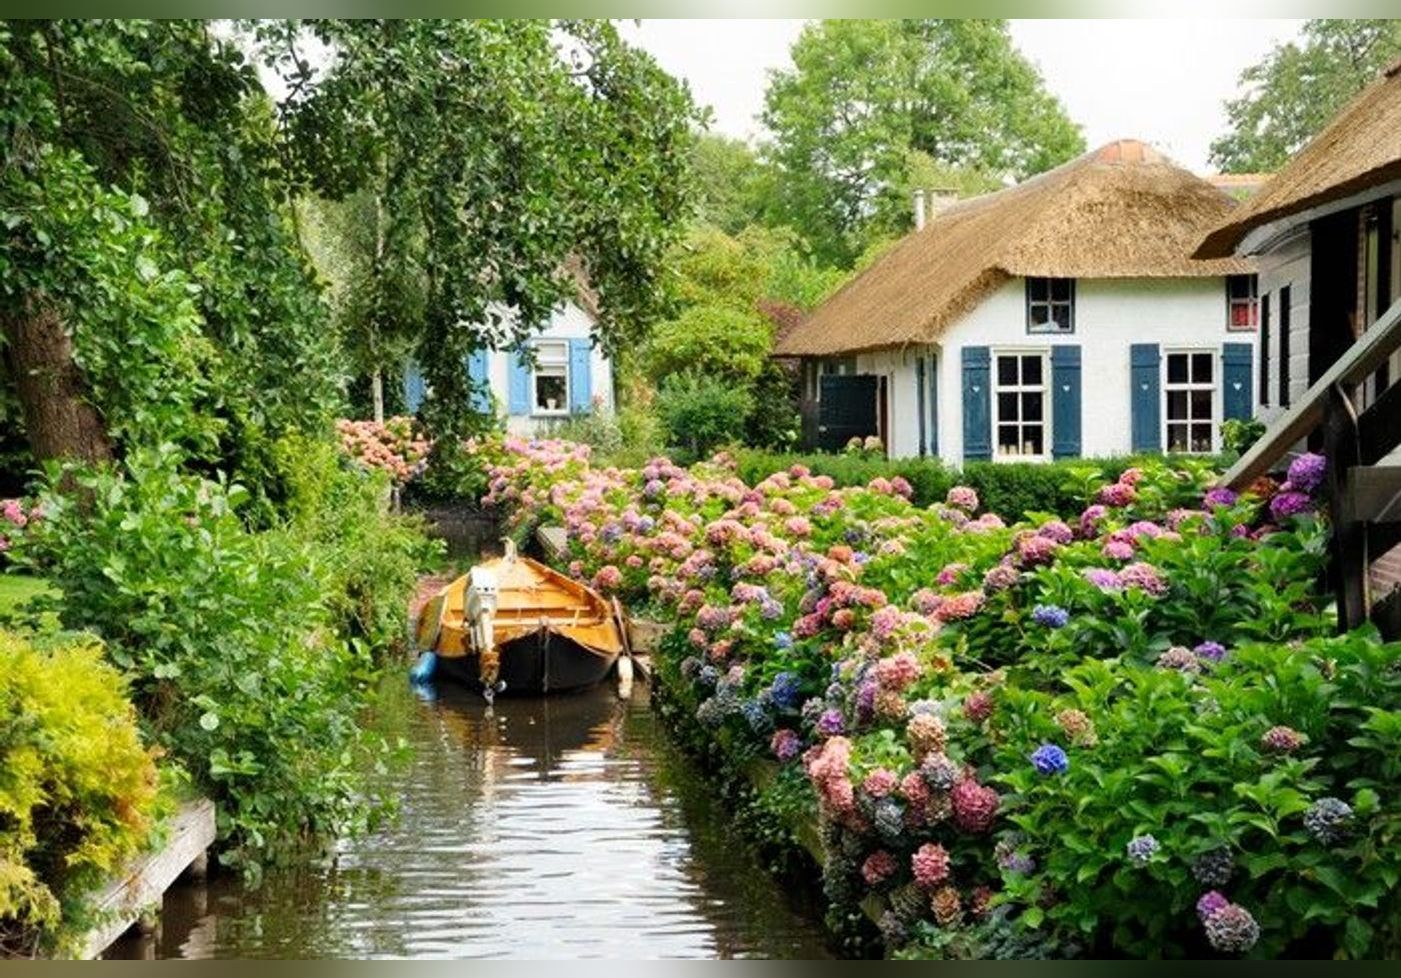 Dit kleine dorp, gelegen in Nederland, is als een sprookjesachtige omgeving